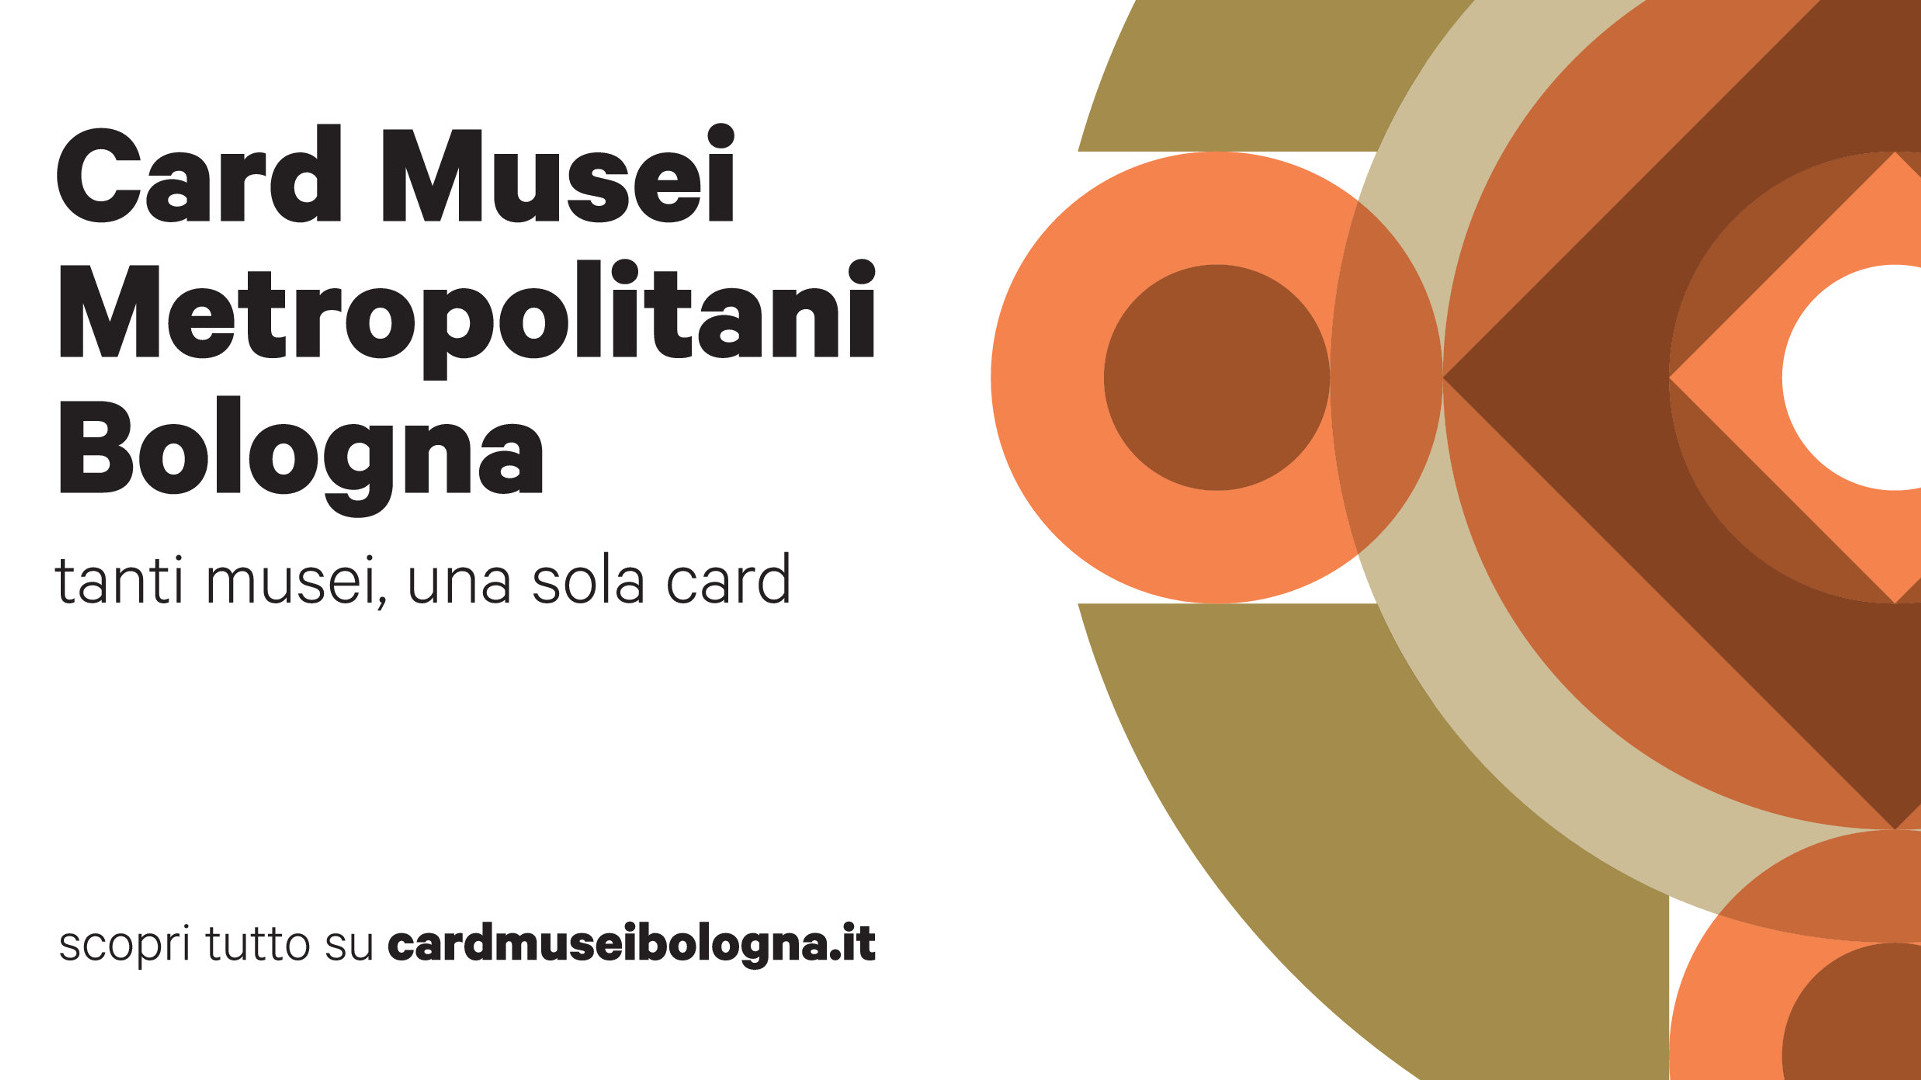 Un anno di Card Musei Metropolitani Bologna, pensata anche per cinema e teatri